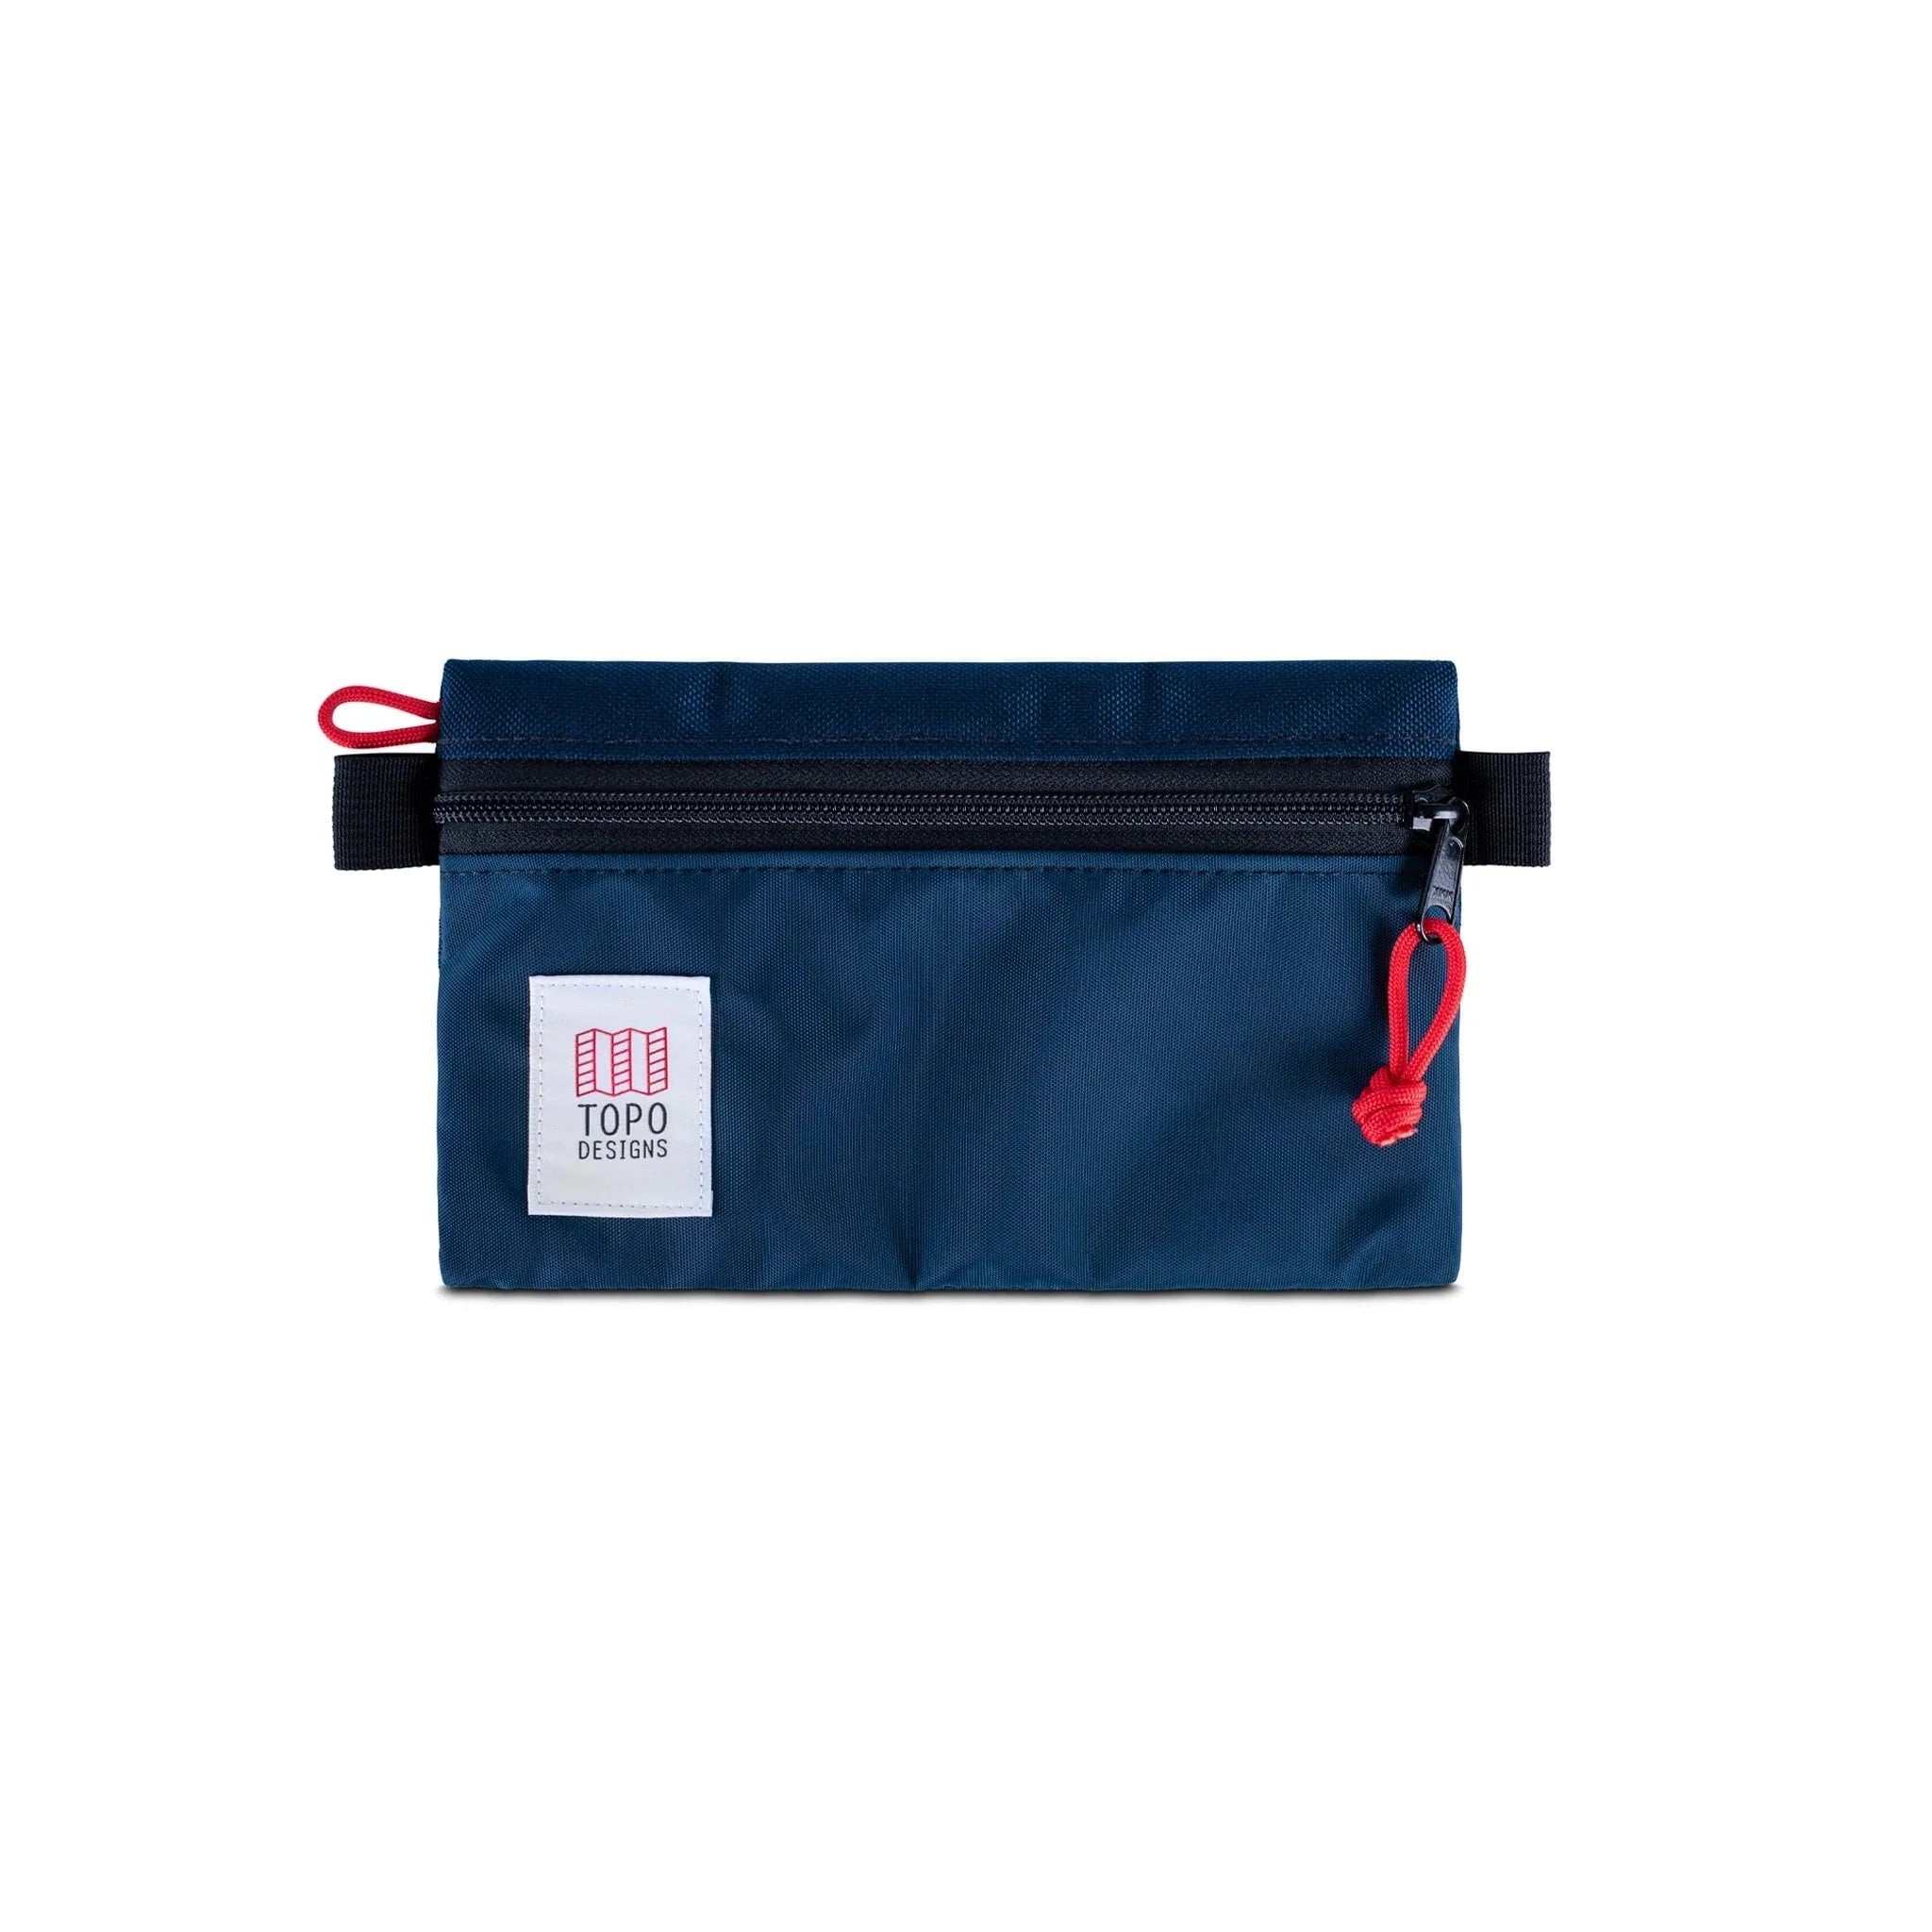 Topo Designs Accessory Bag Small Kleintasche Topo Designs Navy/Navy 